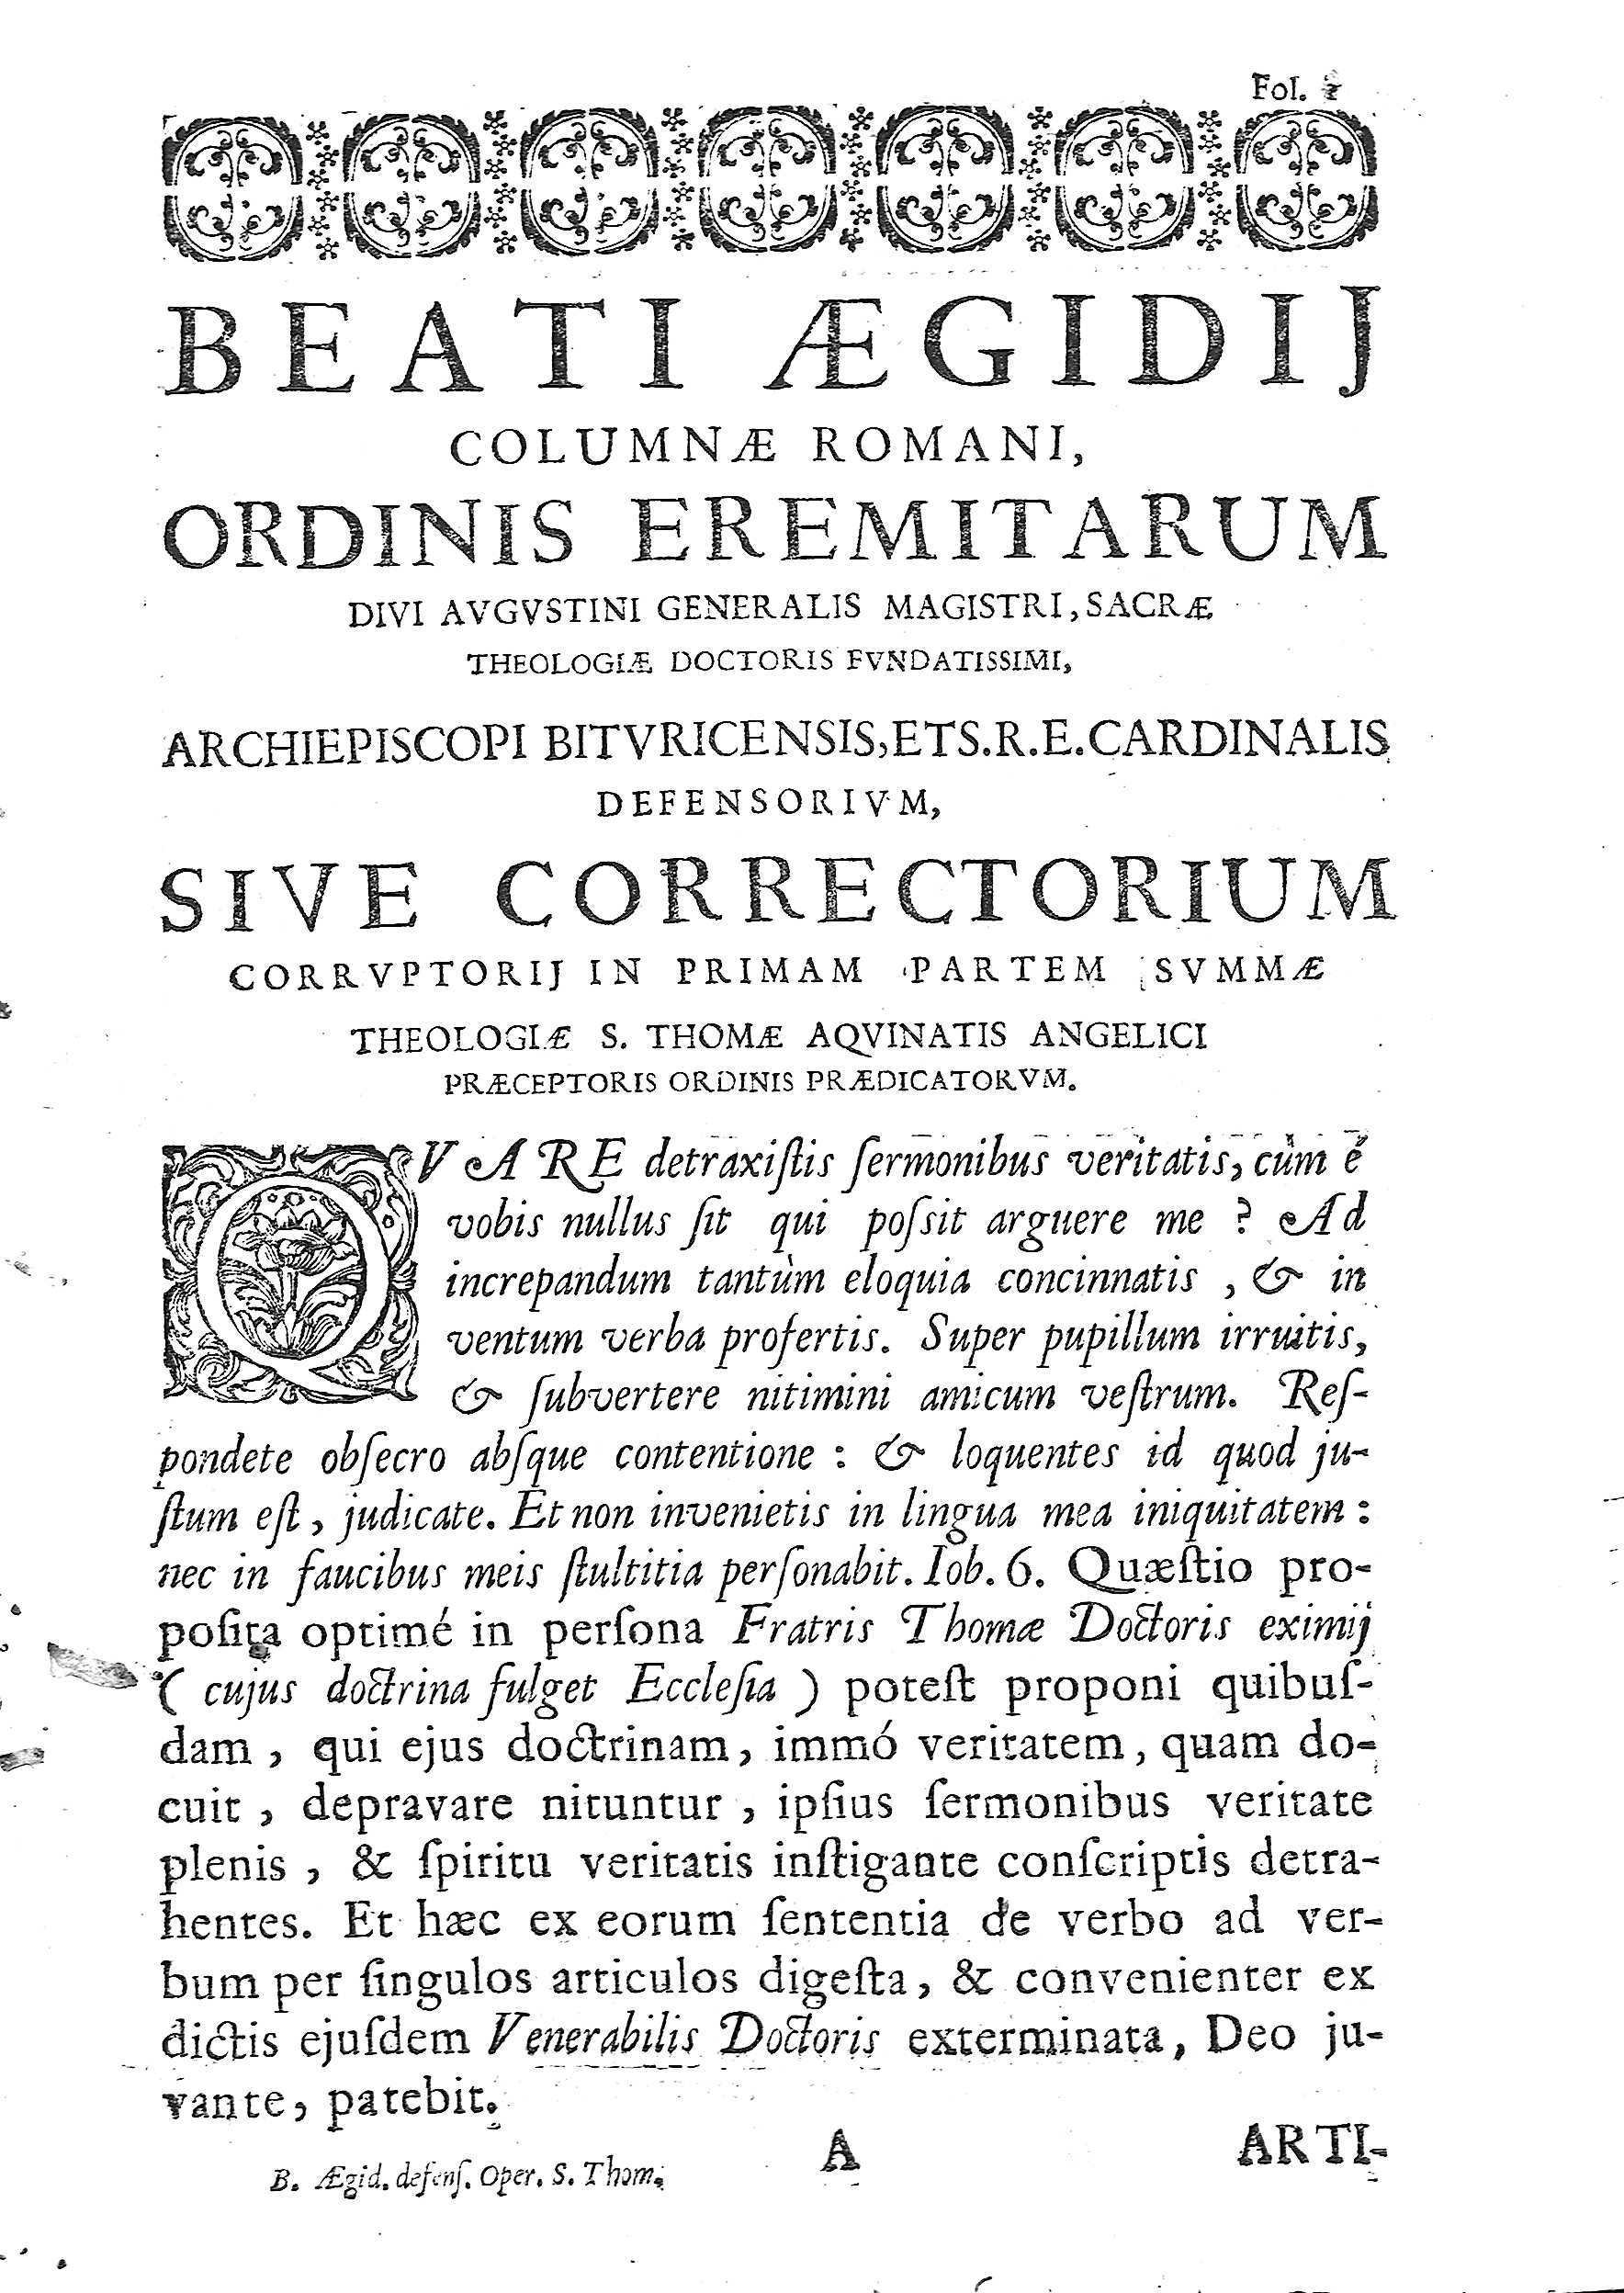 [Praeceptoris Ordinis Praedicatorum] 1